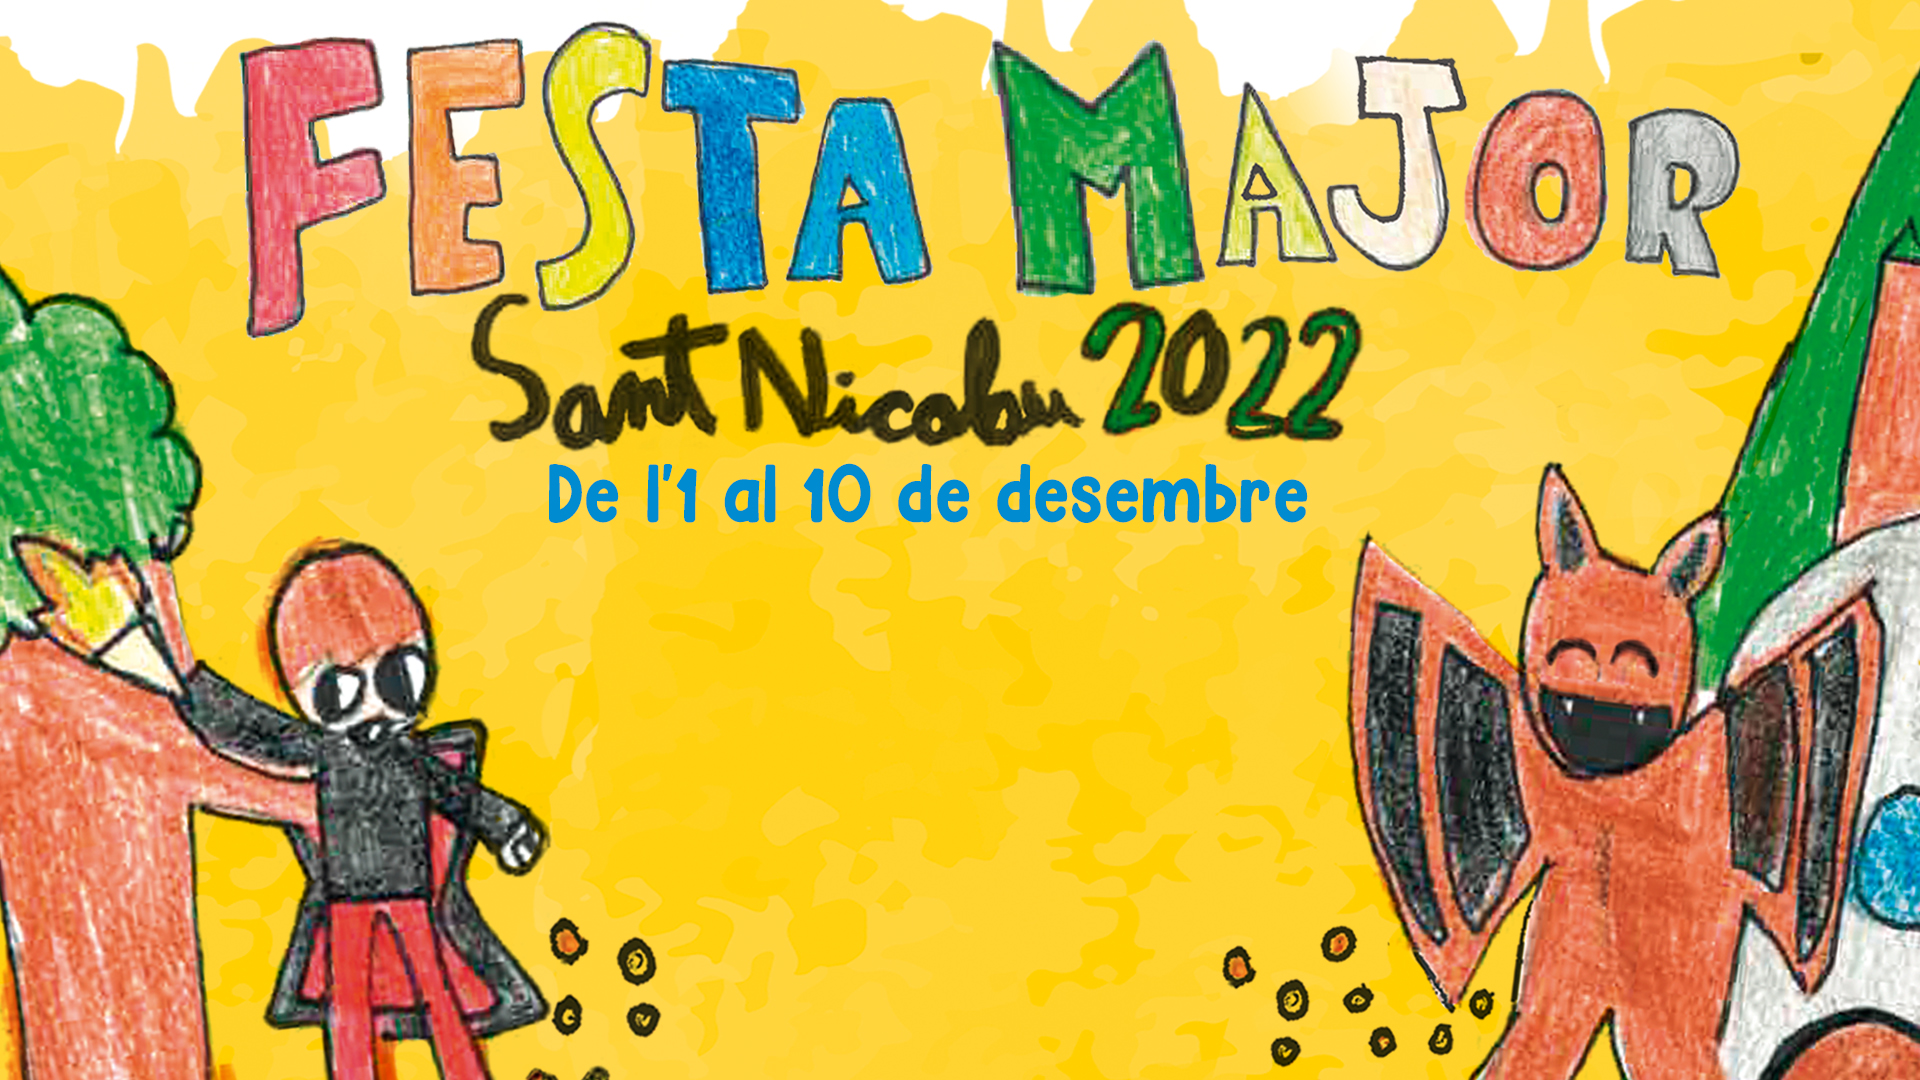 Festa Major de St Nicolau: Espectacle infantil